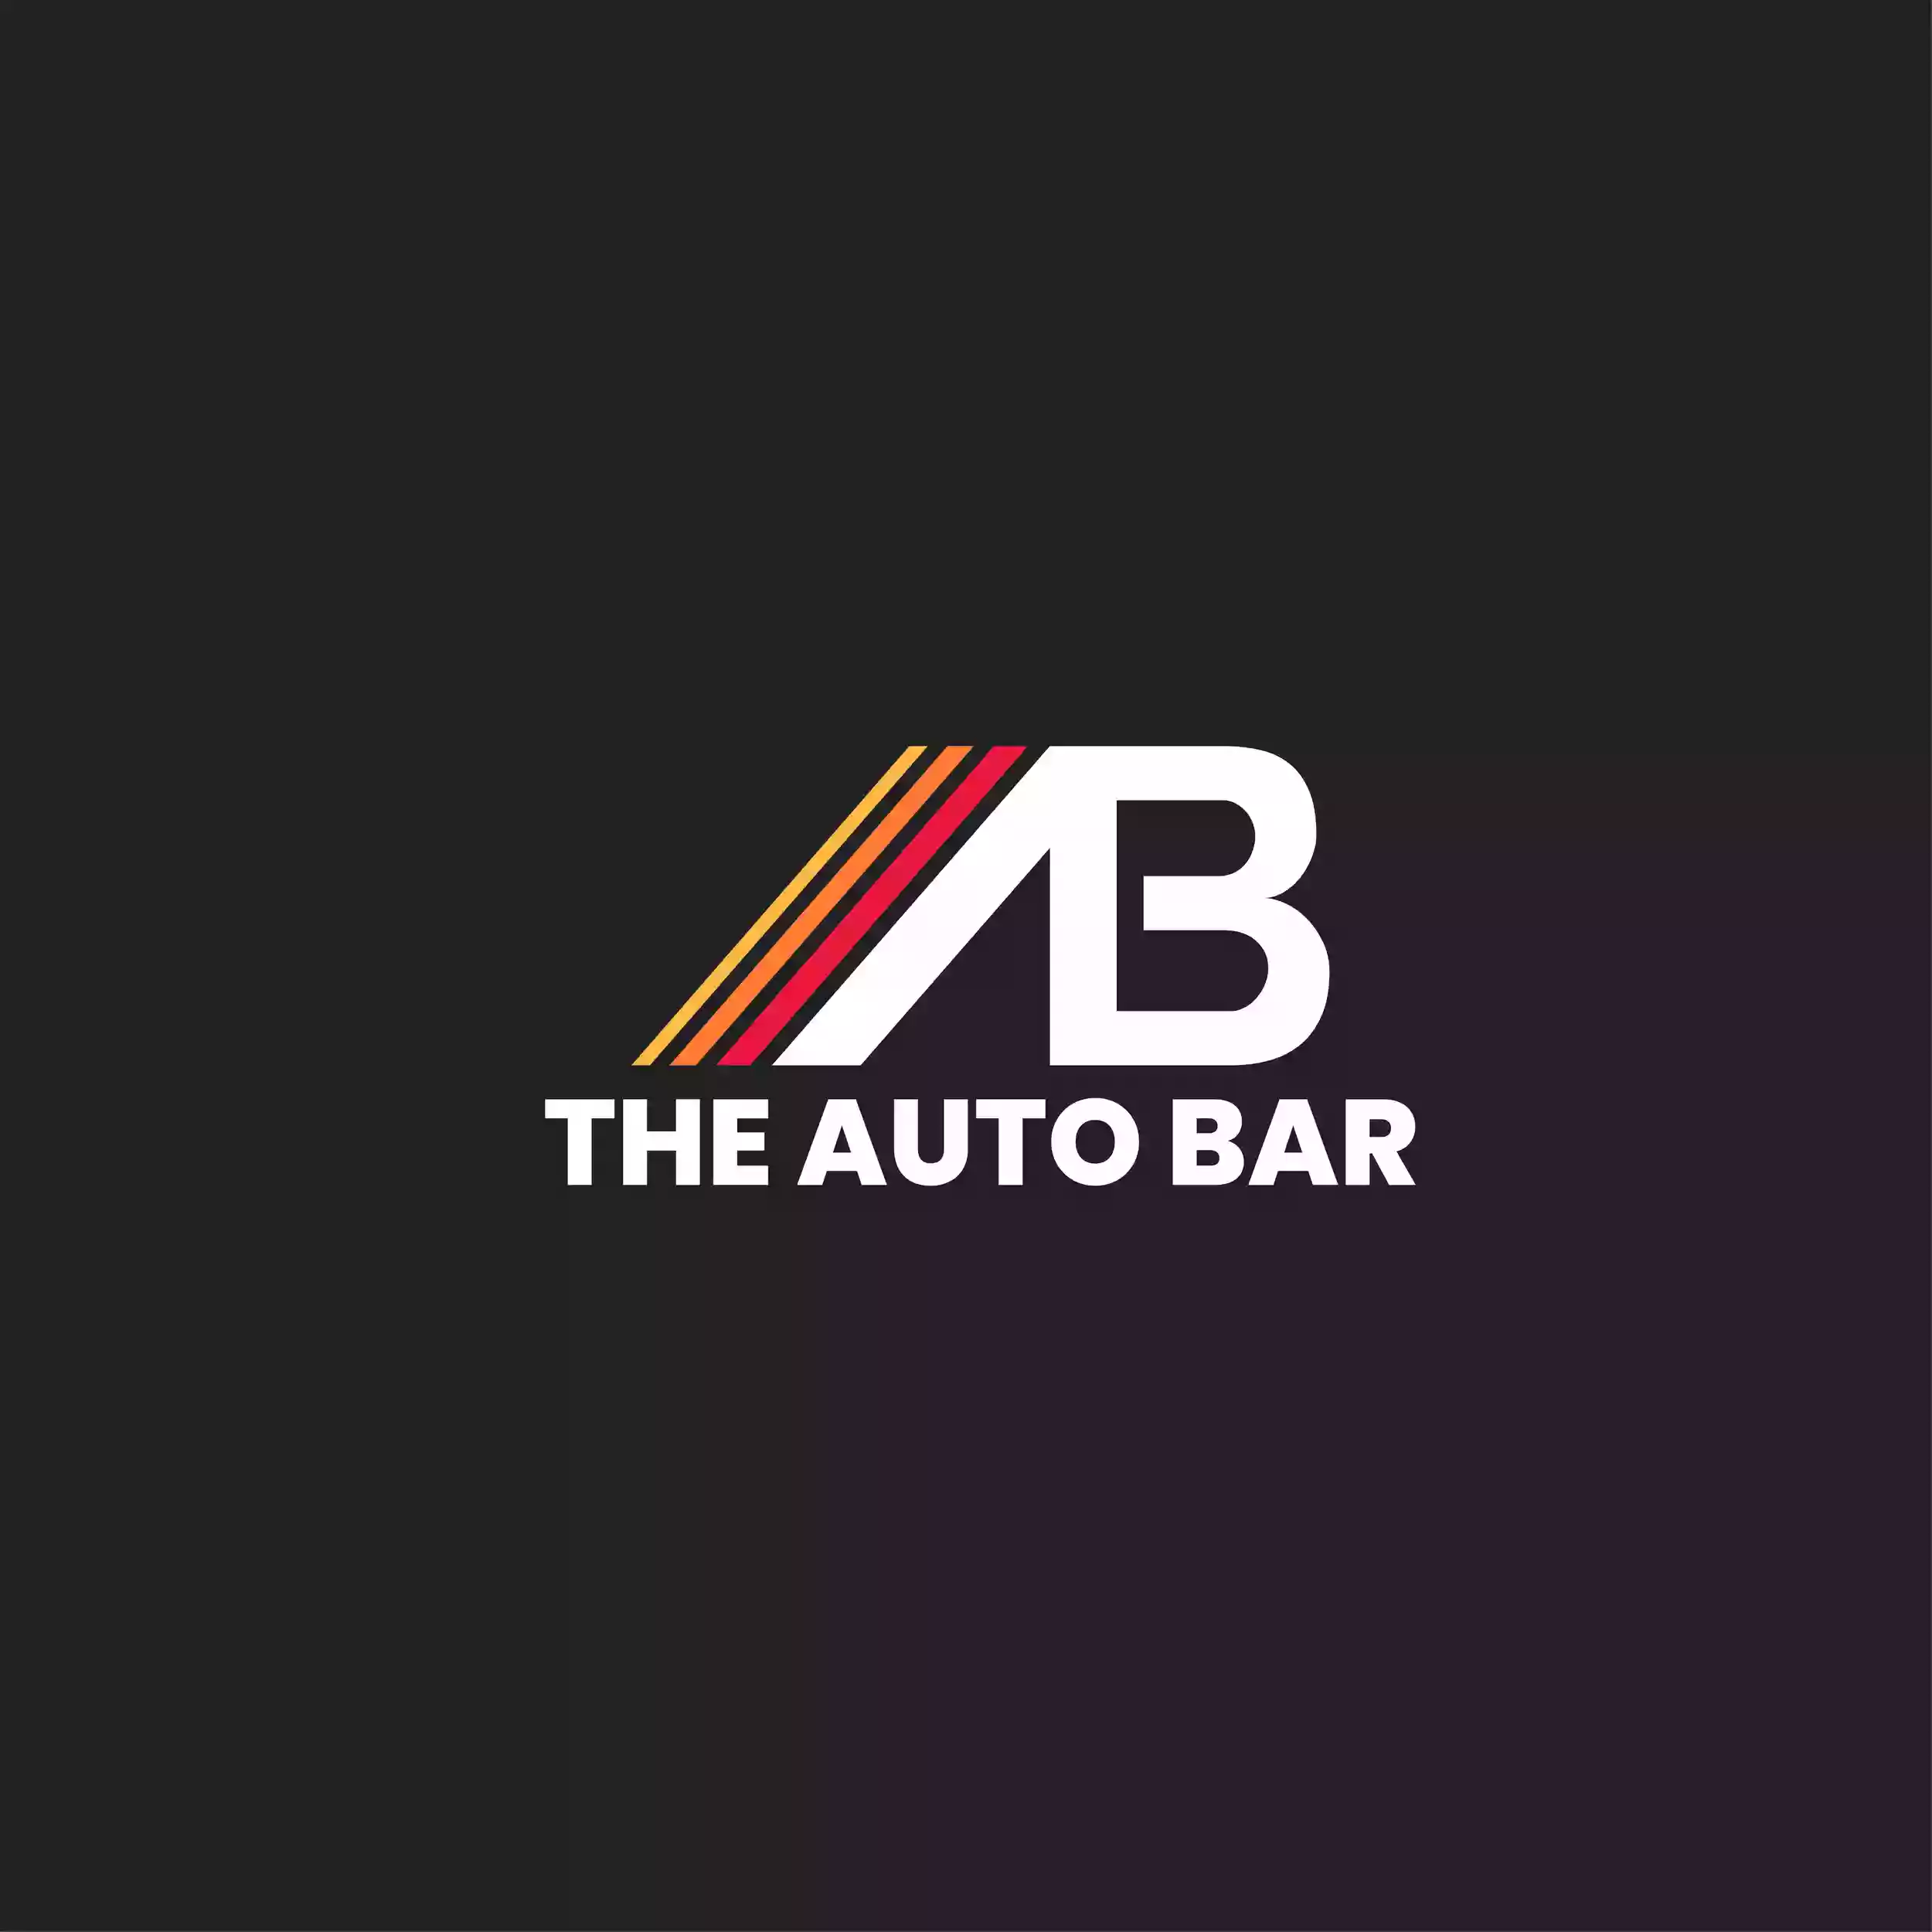 The Auto Bar